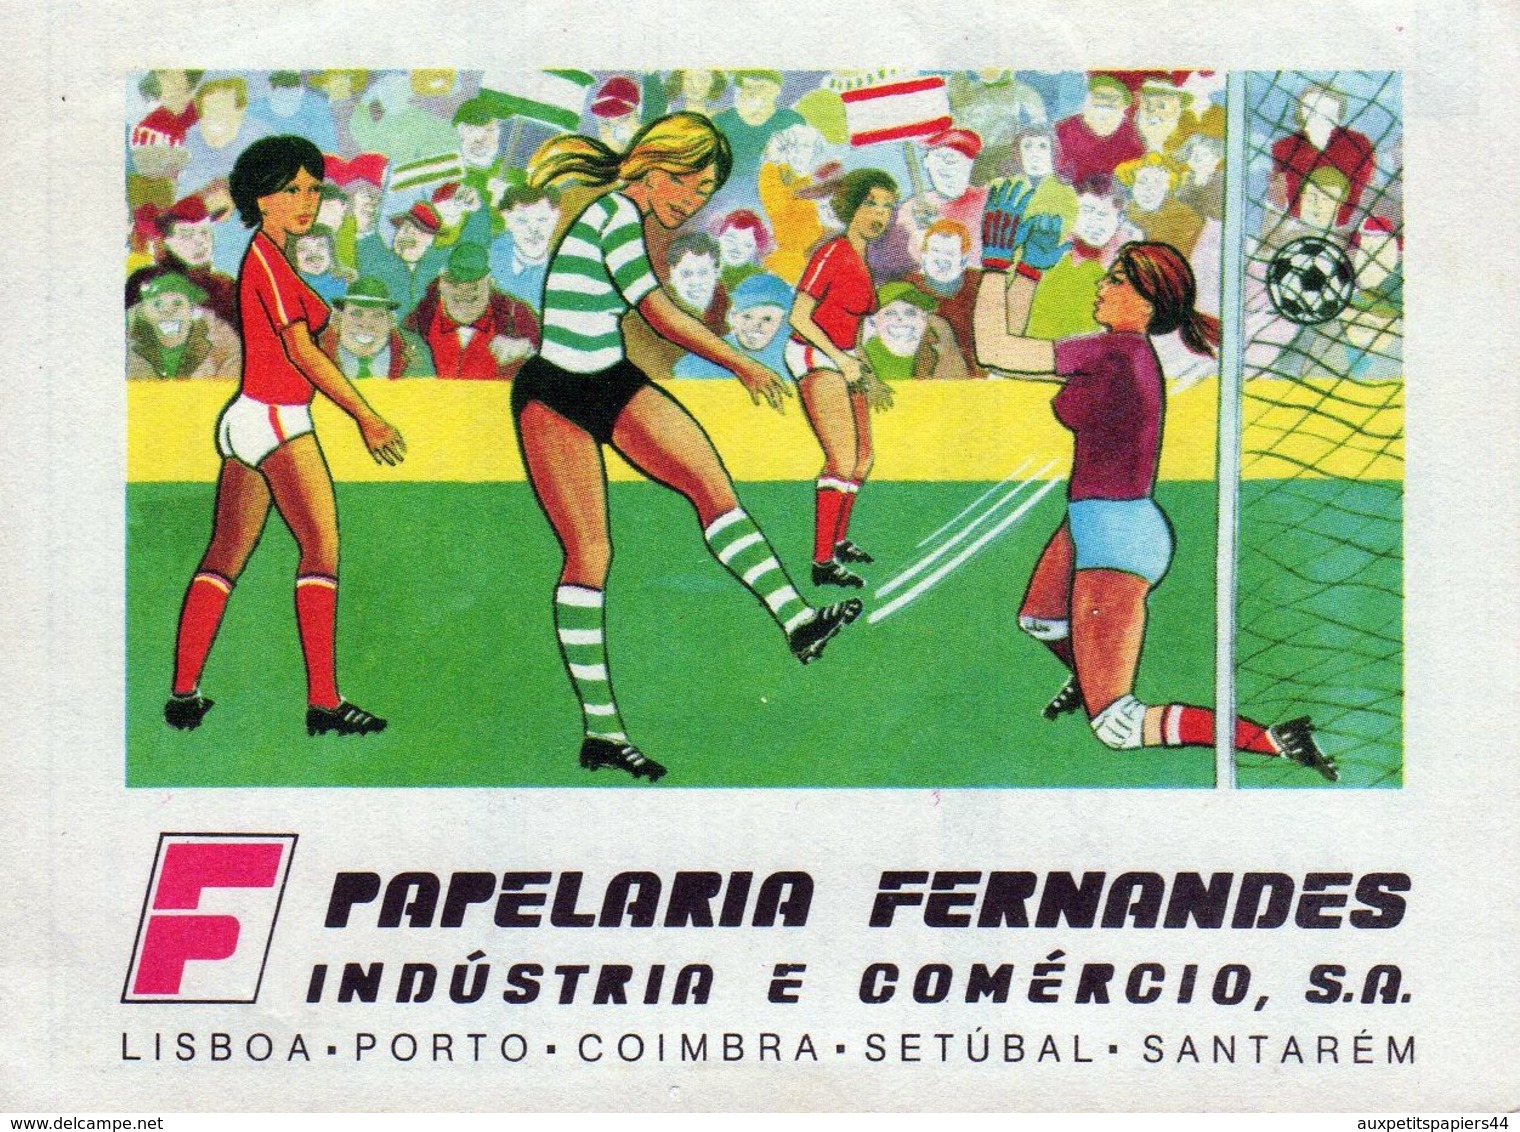 Calendrier Original Sport Lisboa E Benefica - Campeao Nacional 1986-1987 - Football Portugais - Papelaria Fernandes - Klein Formaat: 1981-90